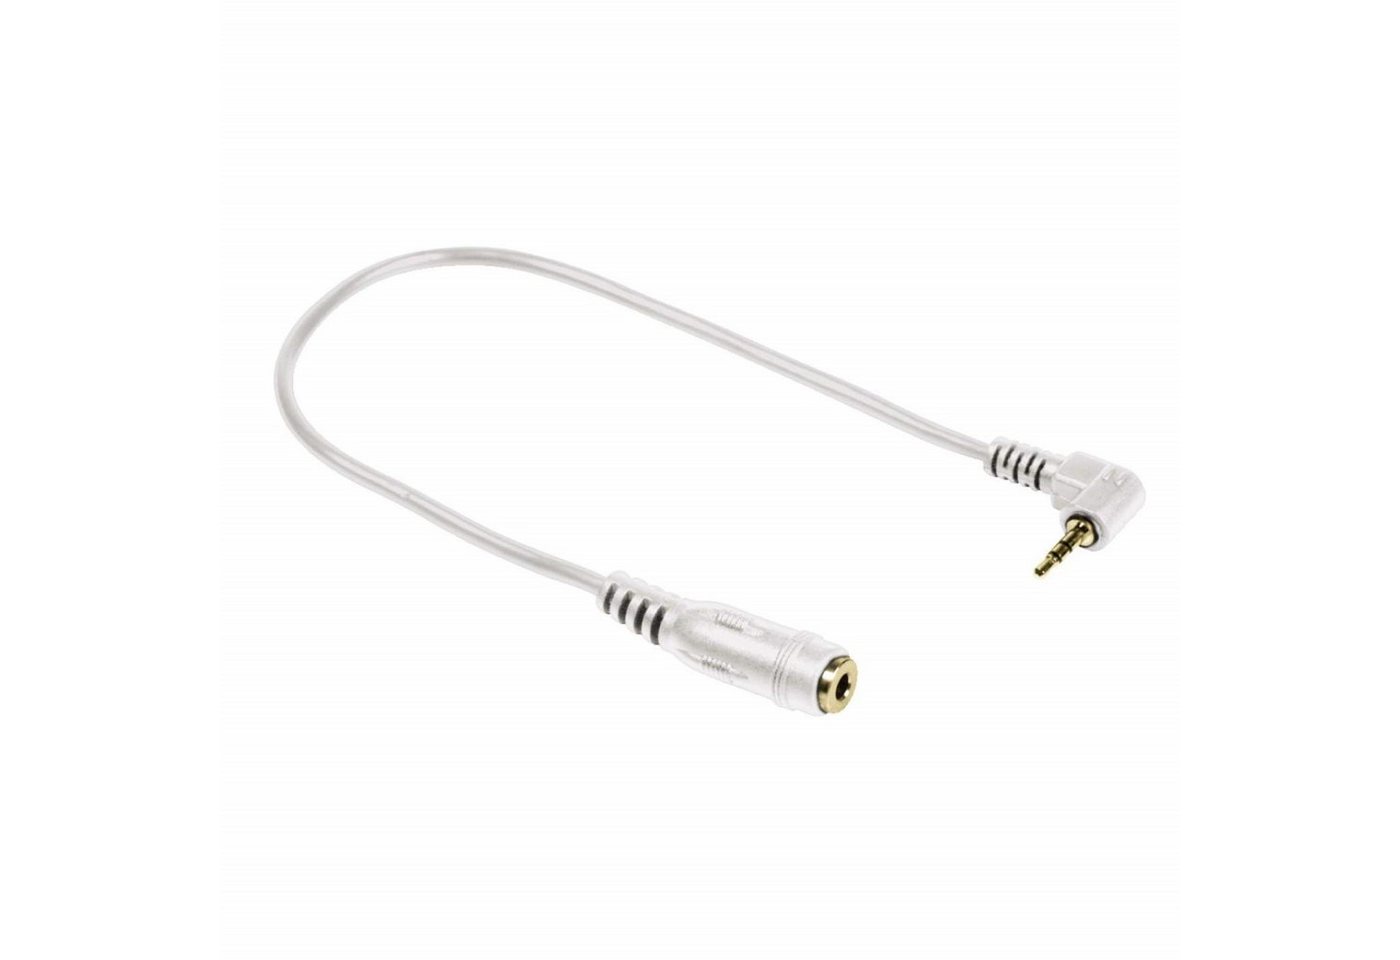 Hama Klinken-Adapter Klinken-Kabel 2,5mm auf 3,5mm Audio-Kabel, 2,5-mm-Klinke, 3,5mm Klinke (6 cm), 2,5mm Klinken-Stecker zu 3,5mm Buchse Kupplung Headset Audio-Adapter von Hama